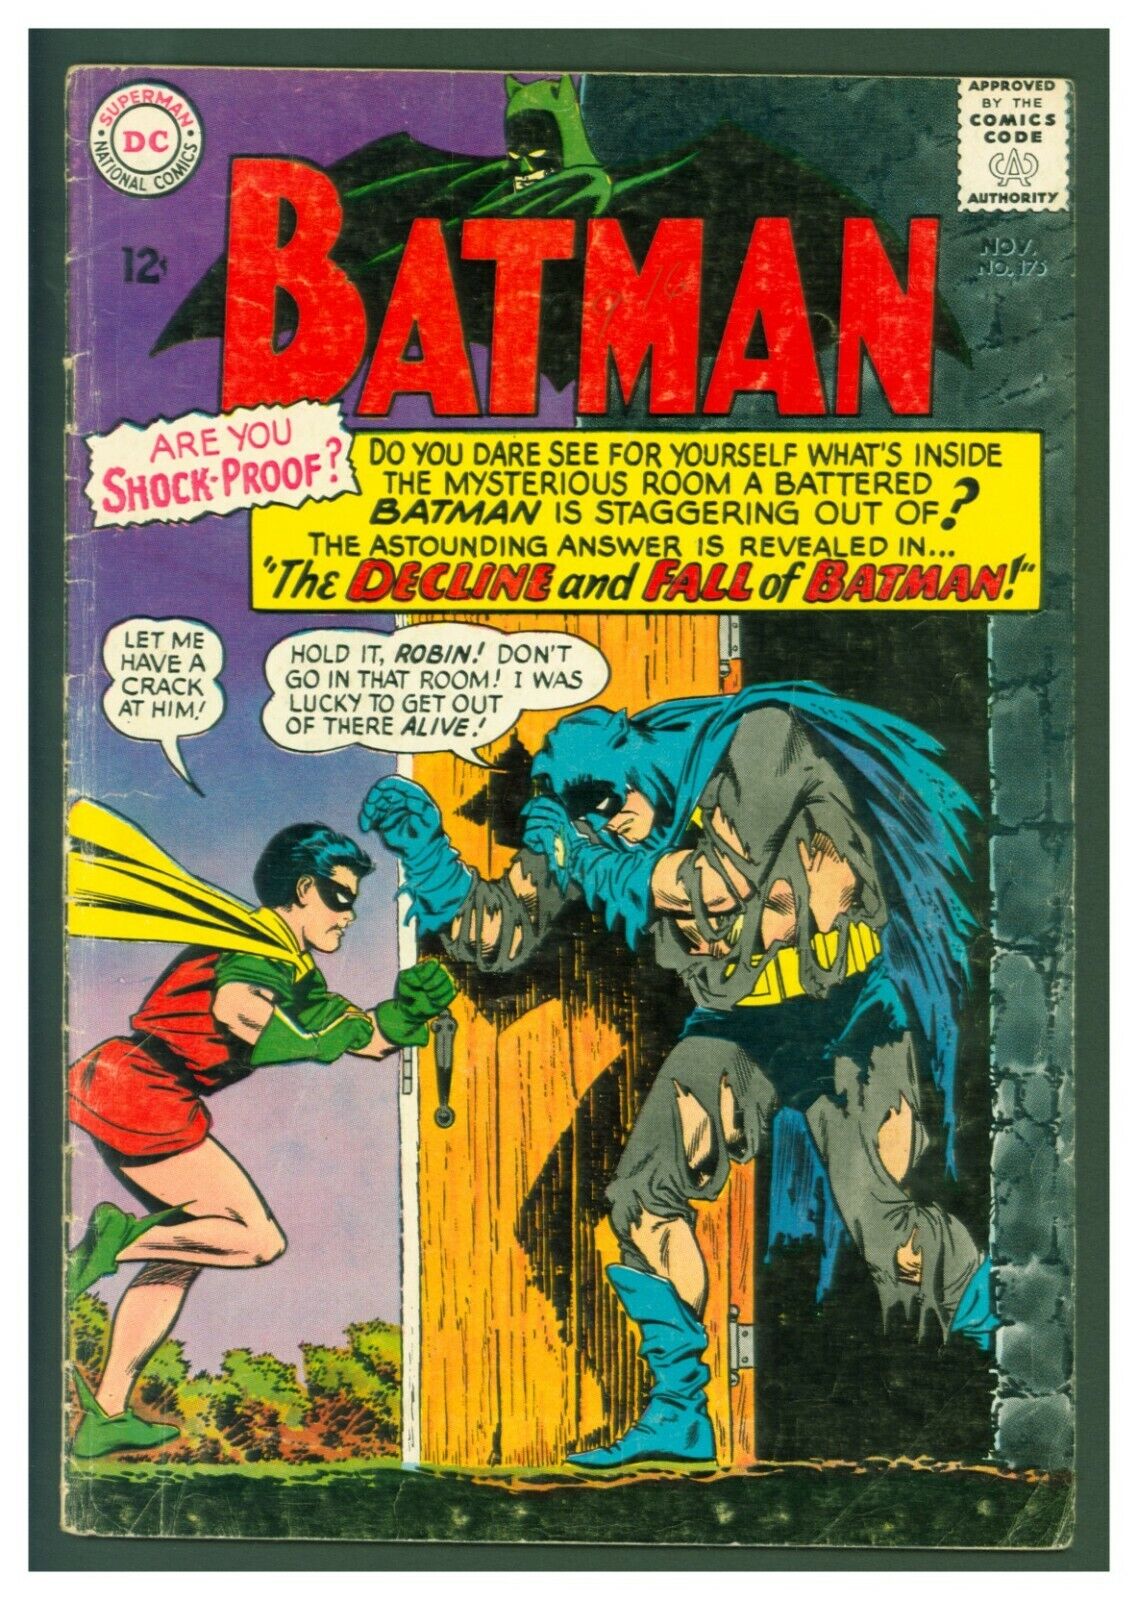 Batman #175 VG DC Comics 1965 The Decline and Fall of Batman